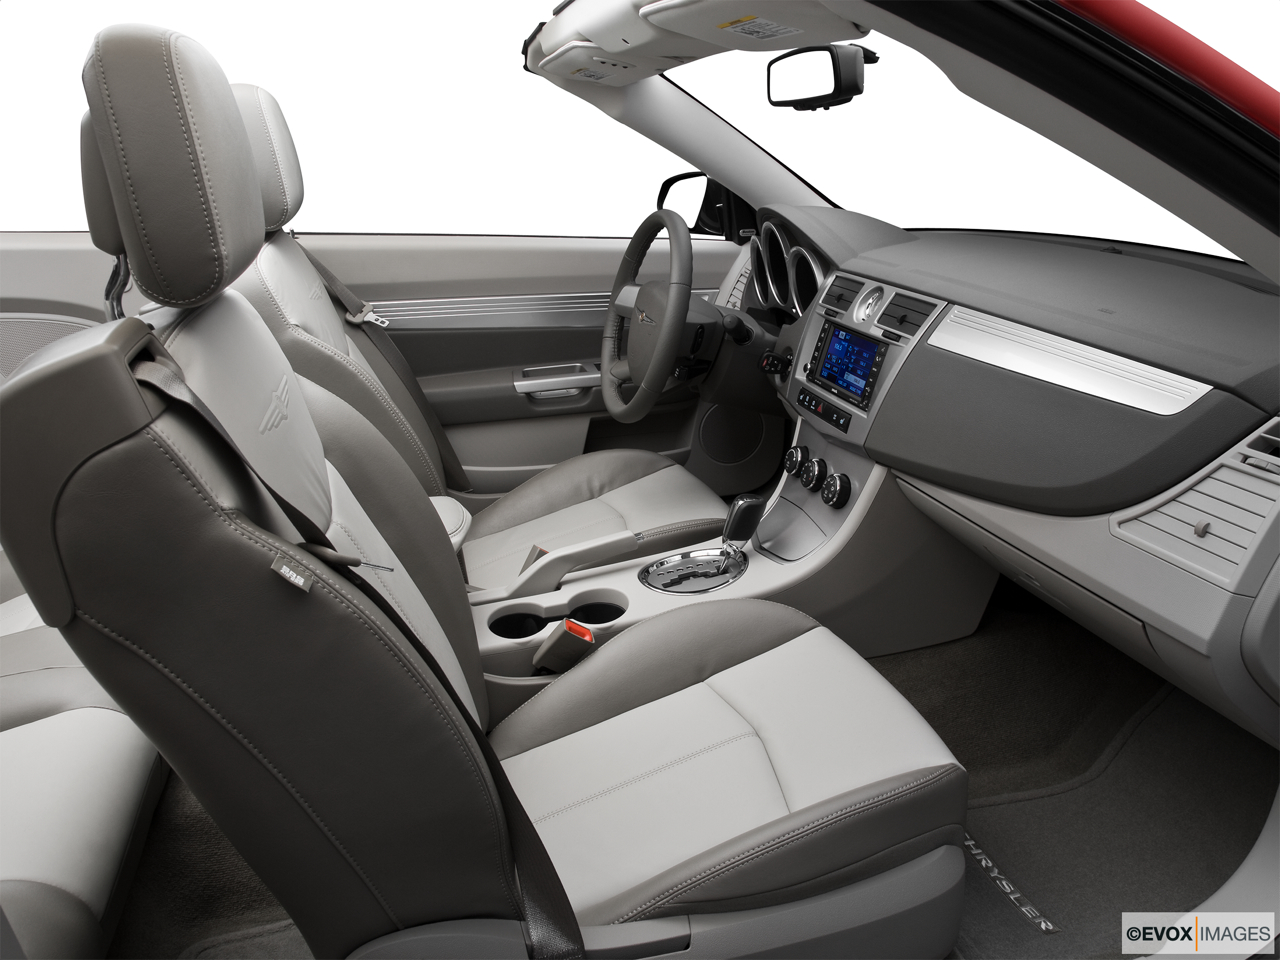 2010 Chrysler Sebring Touring Passenger seat. 